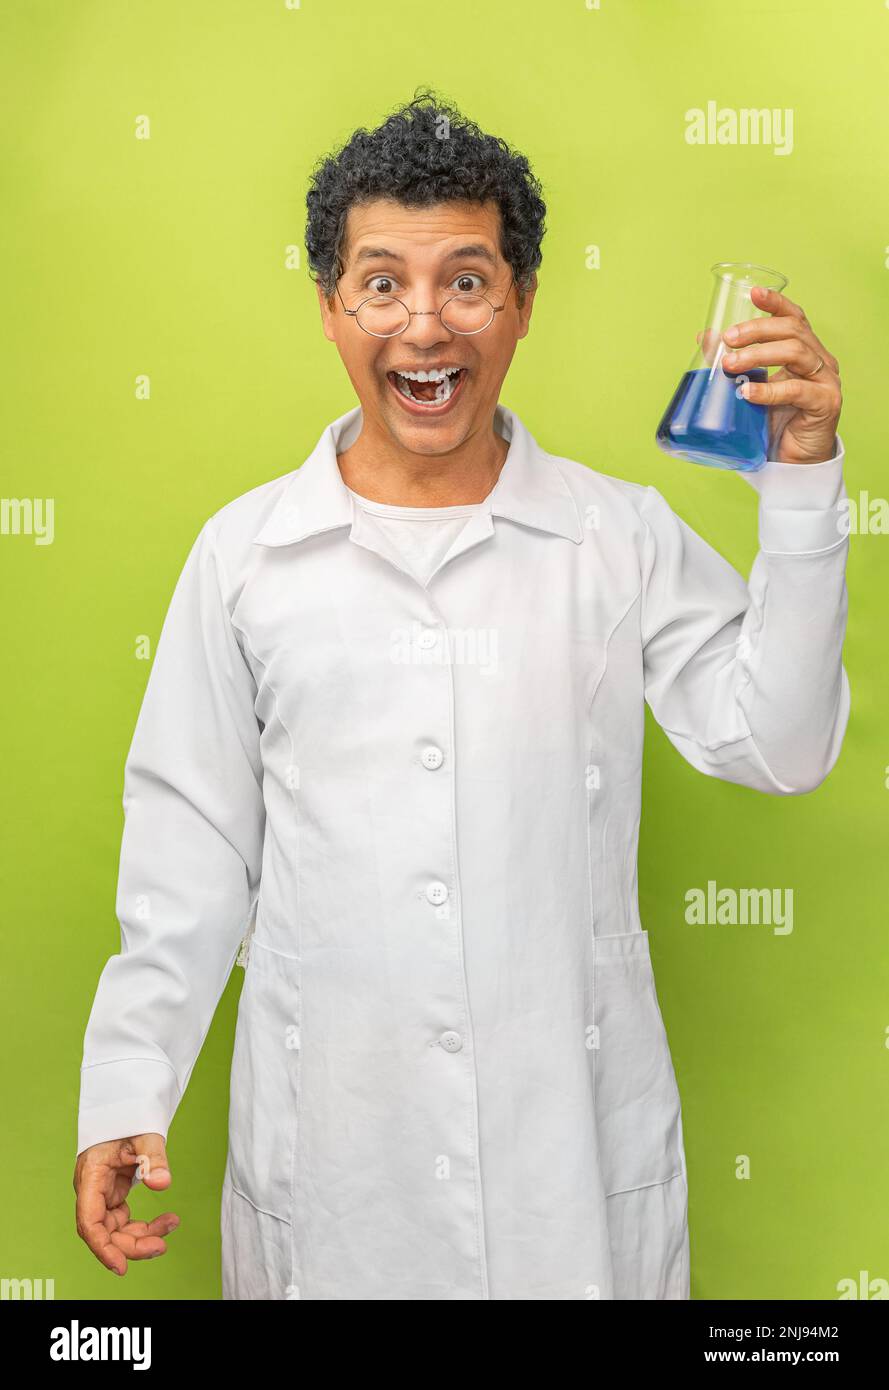 Portrait eines brasilianischen Genies Wissenschaftler glücklich mit seinem wissenschaftlichen Experiment auf grünem Hintergrund, Arzt mit weißem Kittel Stockfoto